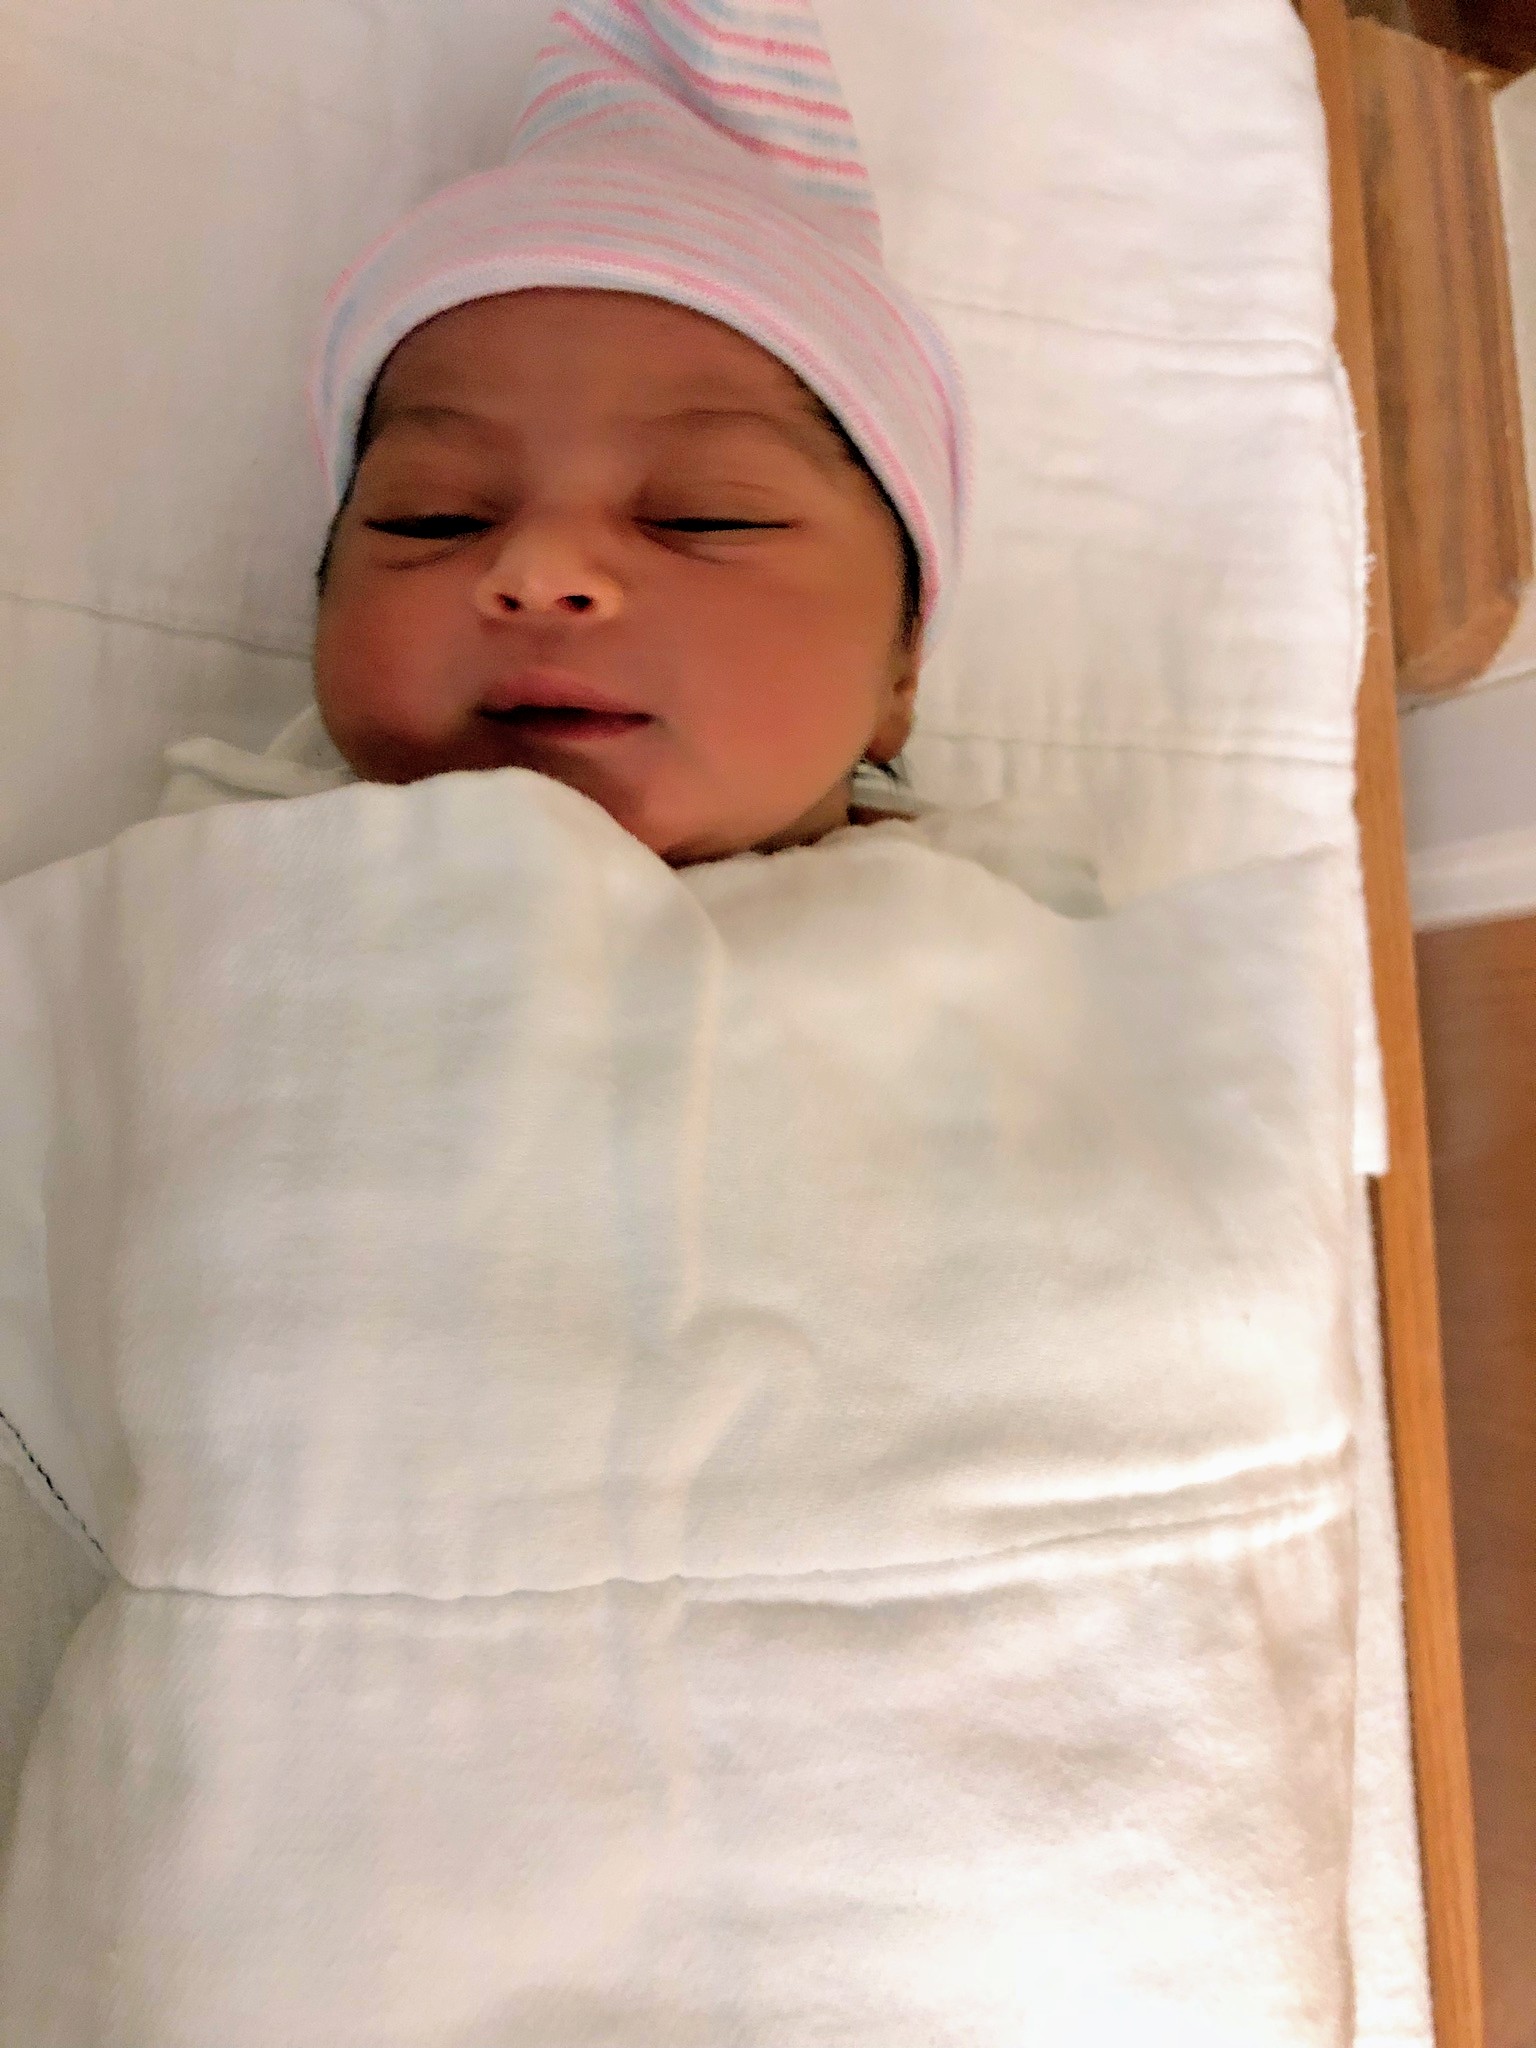 Abha's new baby, Aahana